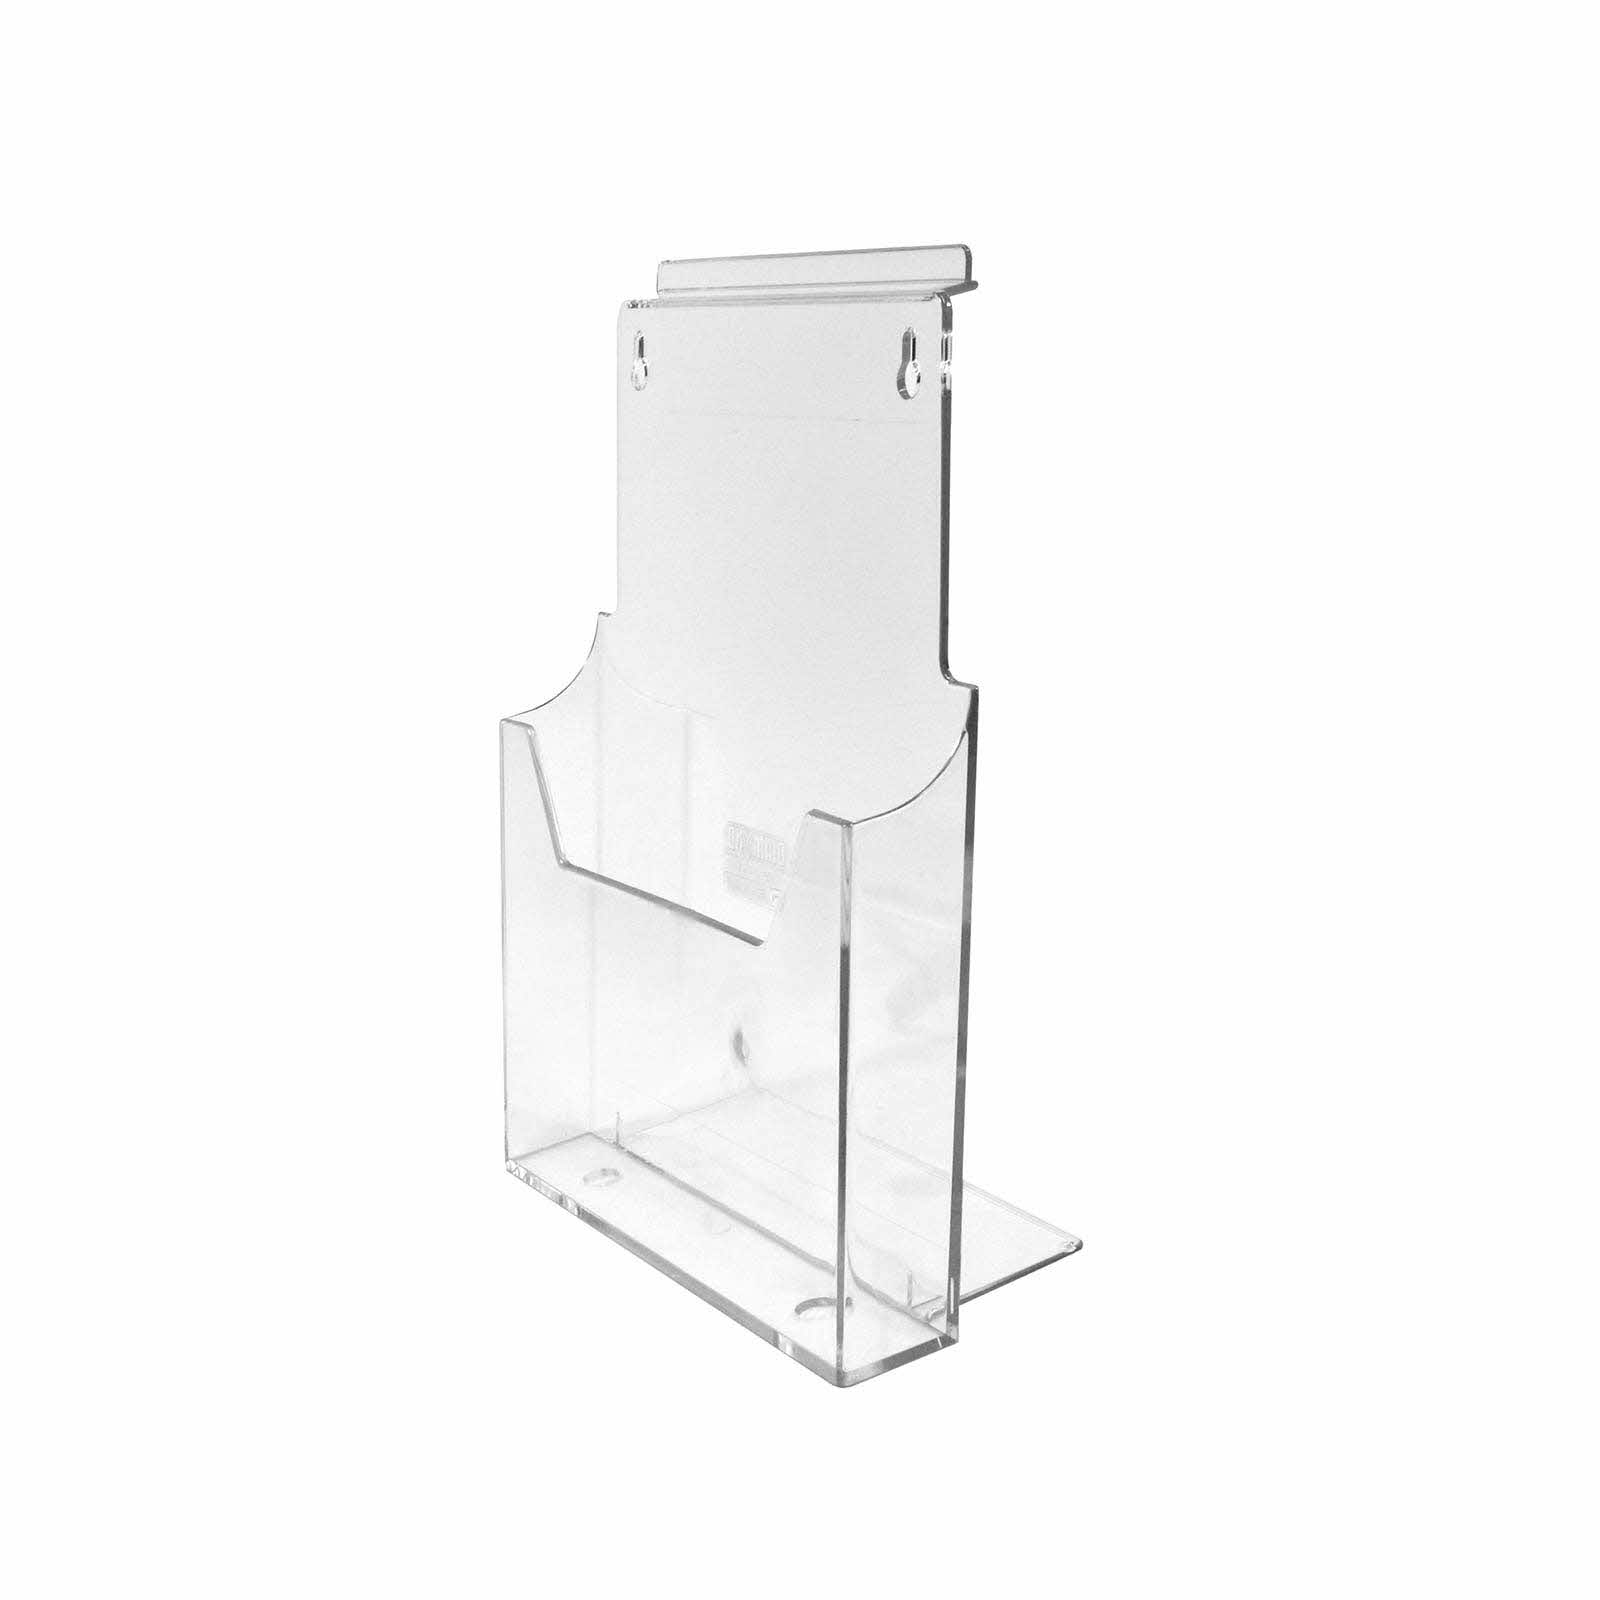 Brochure Holder - A4 Single Pocket Dispenser - Slatwall or Counter Use (G1) 